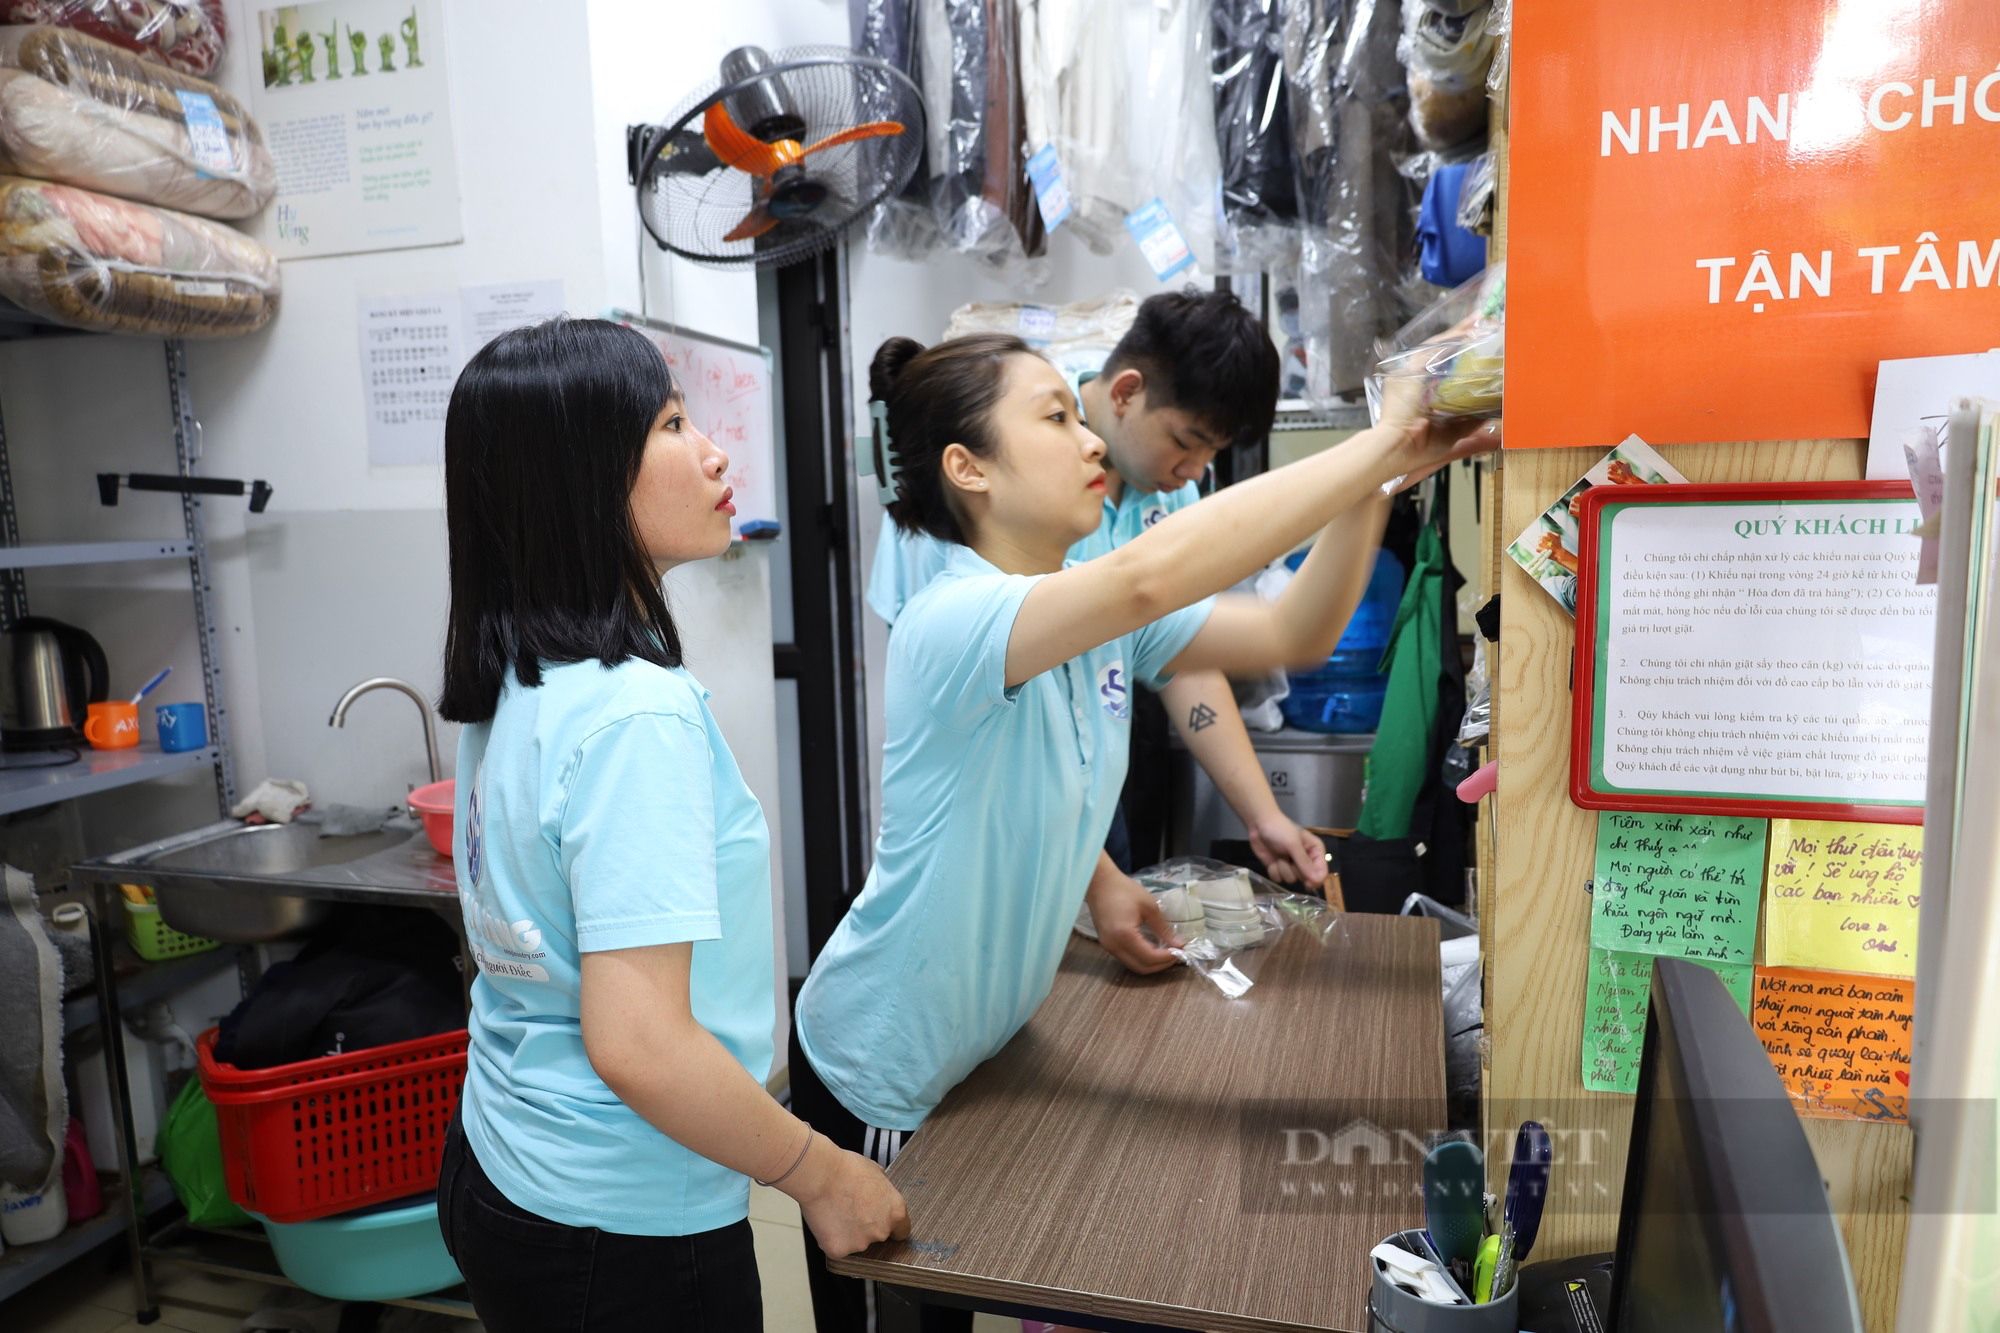 Tiệm giặt là đặc biệt ở Hà Nội chỉ sử dụng “cử chỉ bằng tay” để giao tiếp với khách hàng - Ảnh 4.